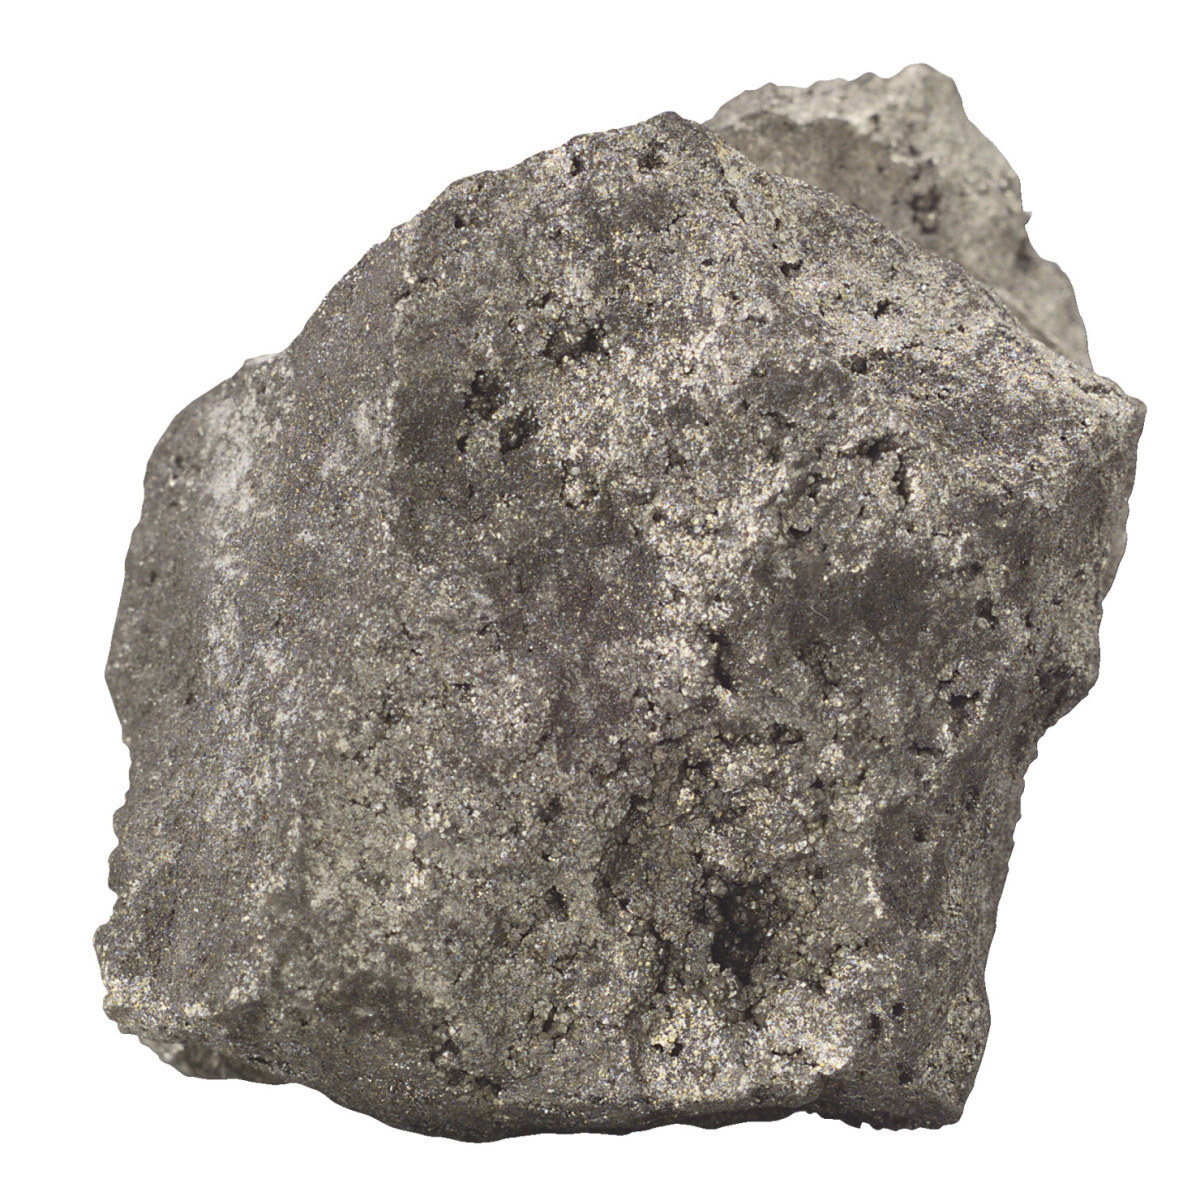 587284 Scott Resources Hand Sample Some Quartz Massive Pyrite